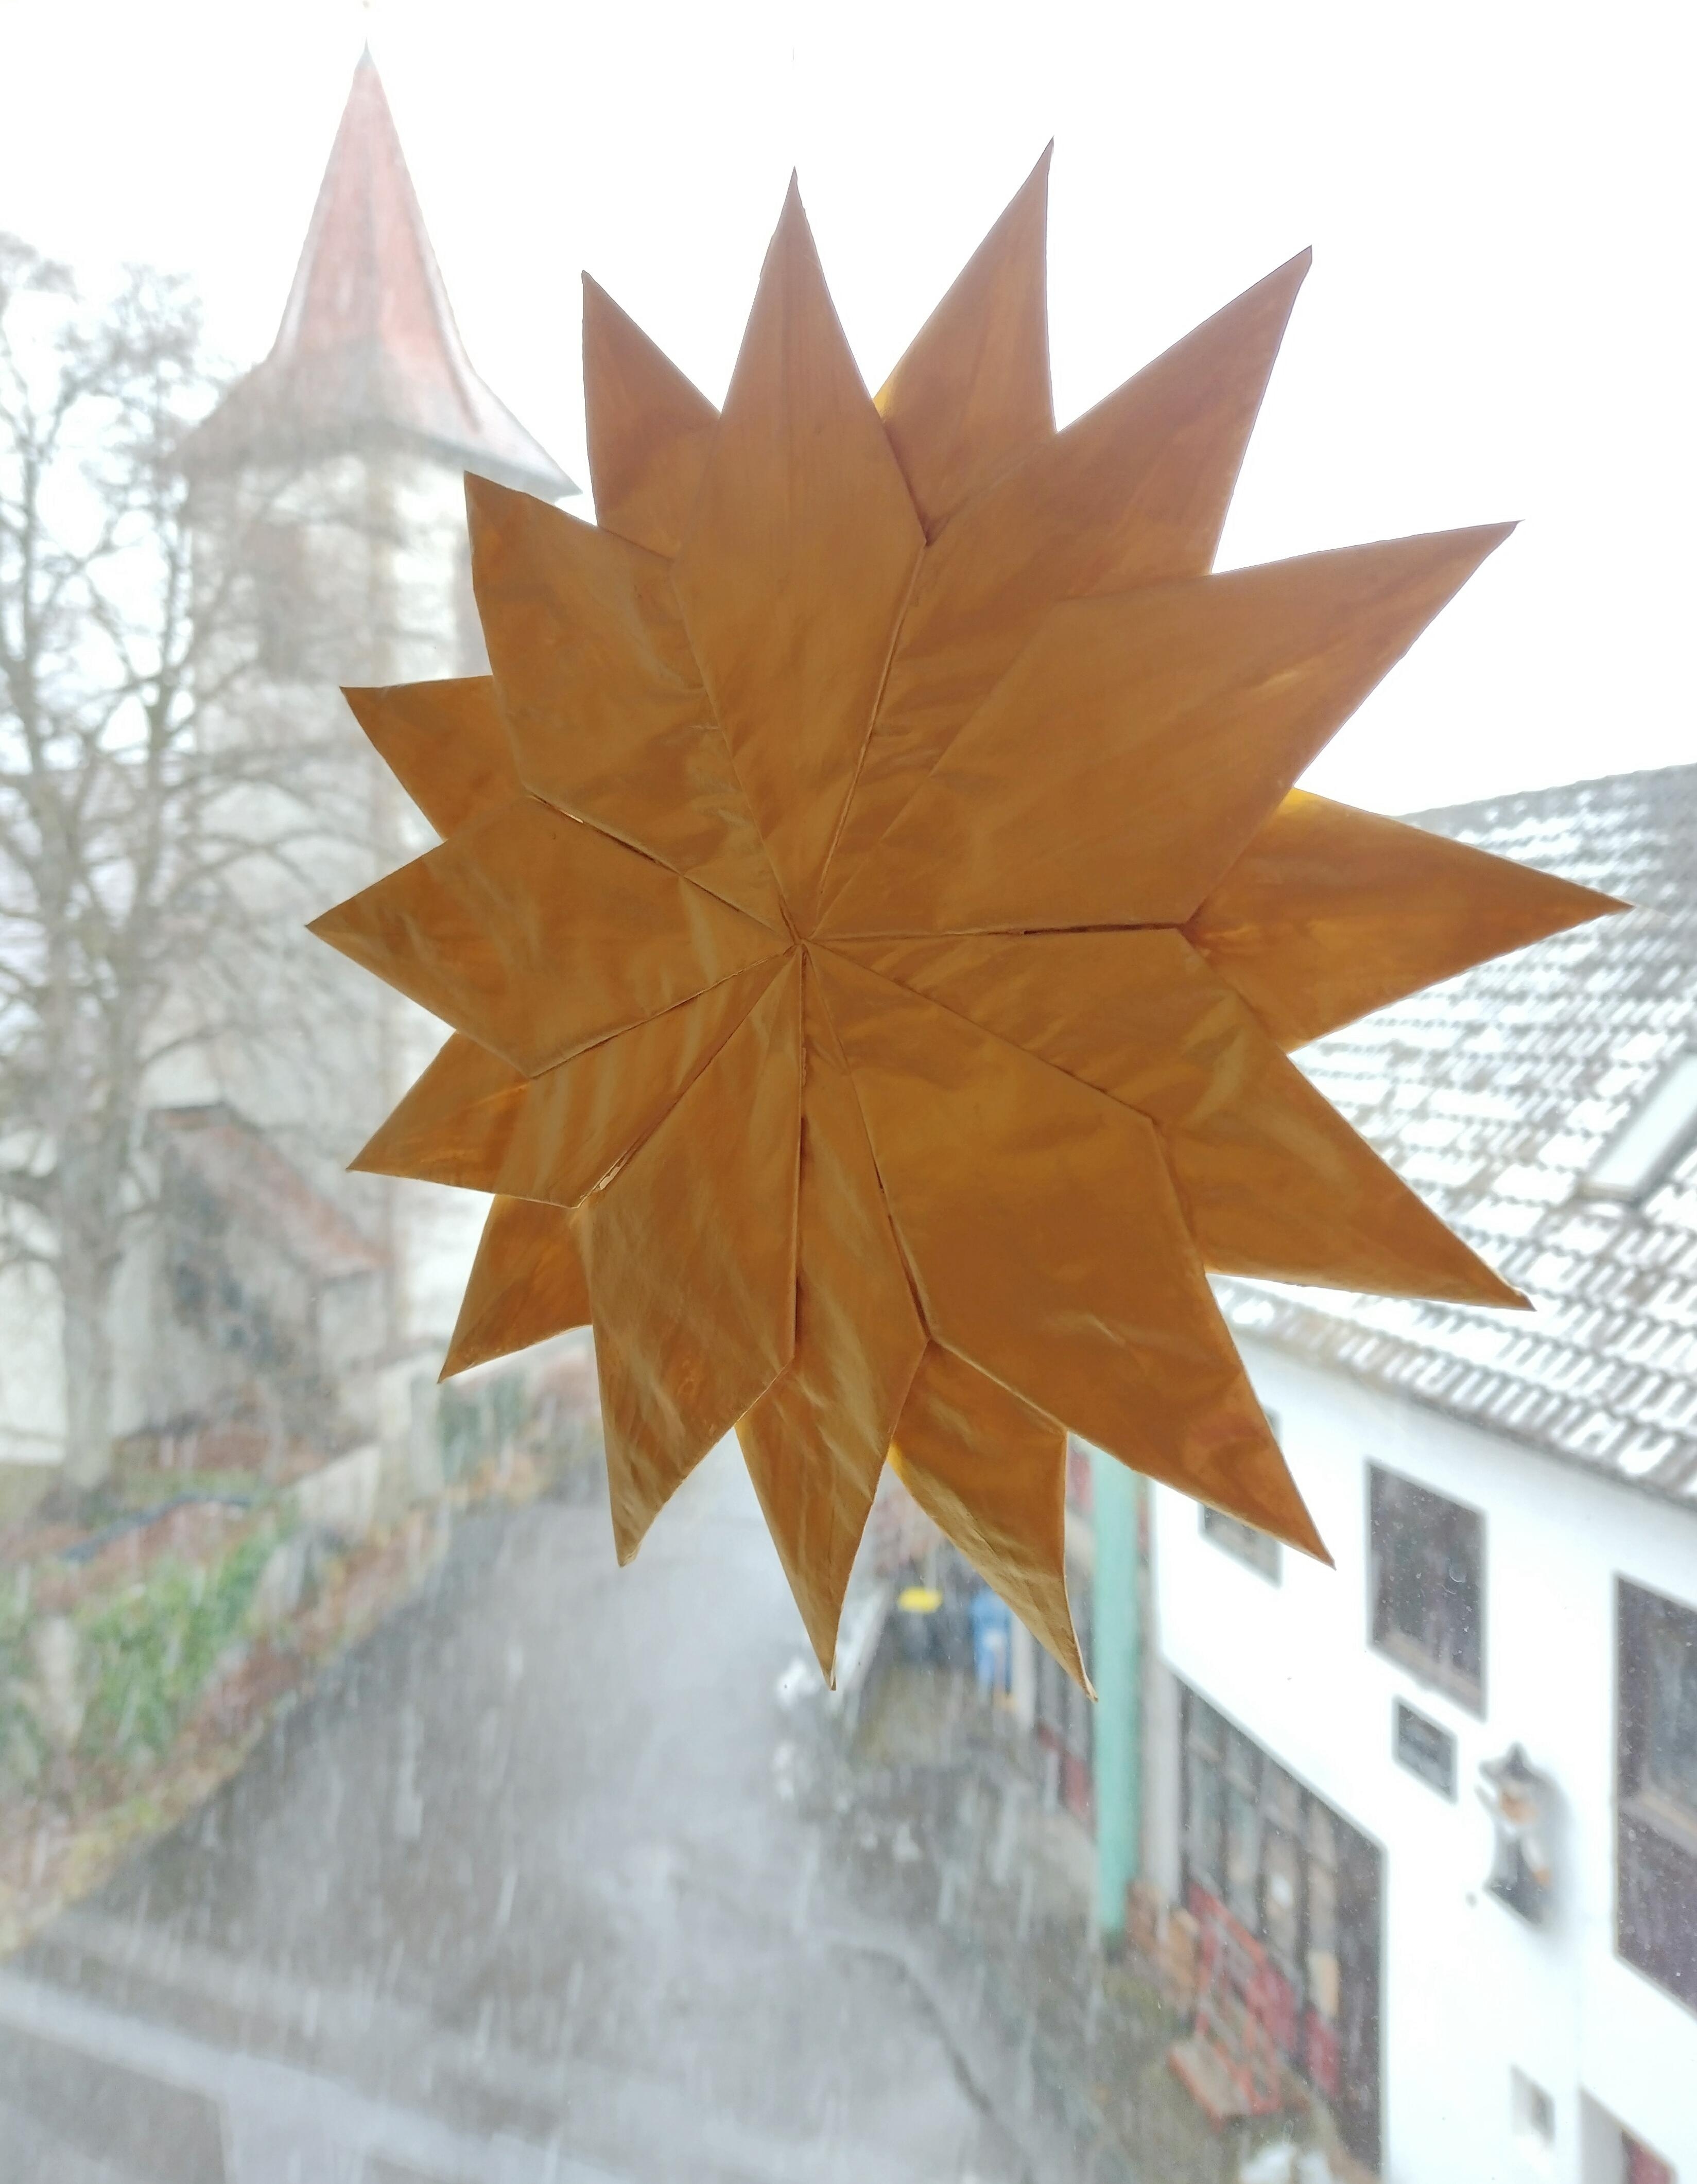 #winter #fenster #wohnzimmer #stern #papierstern #diy #schnee #ausblick